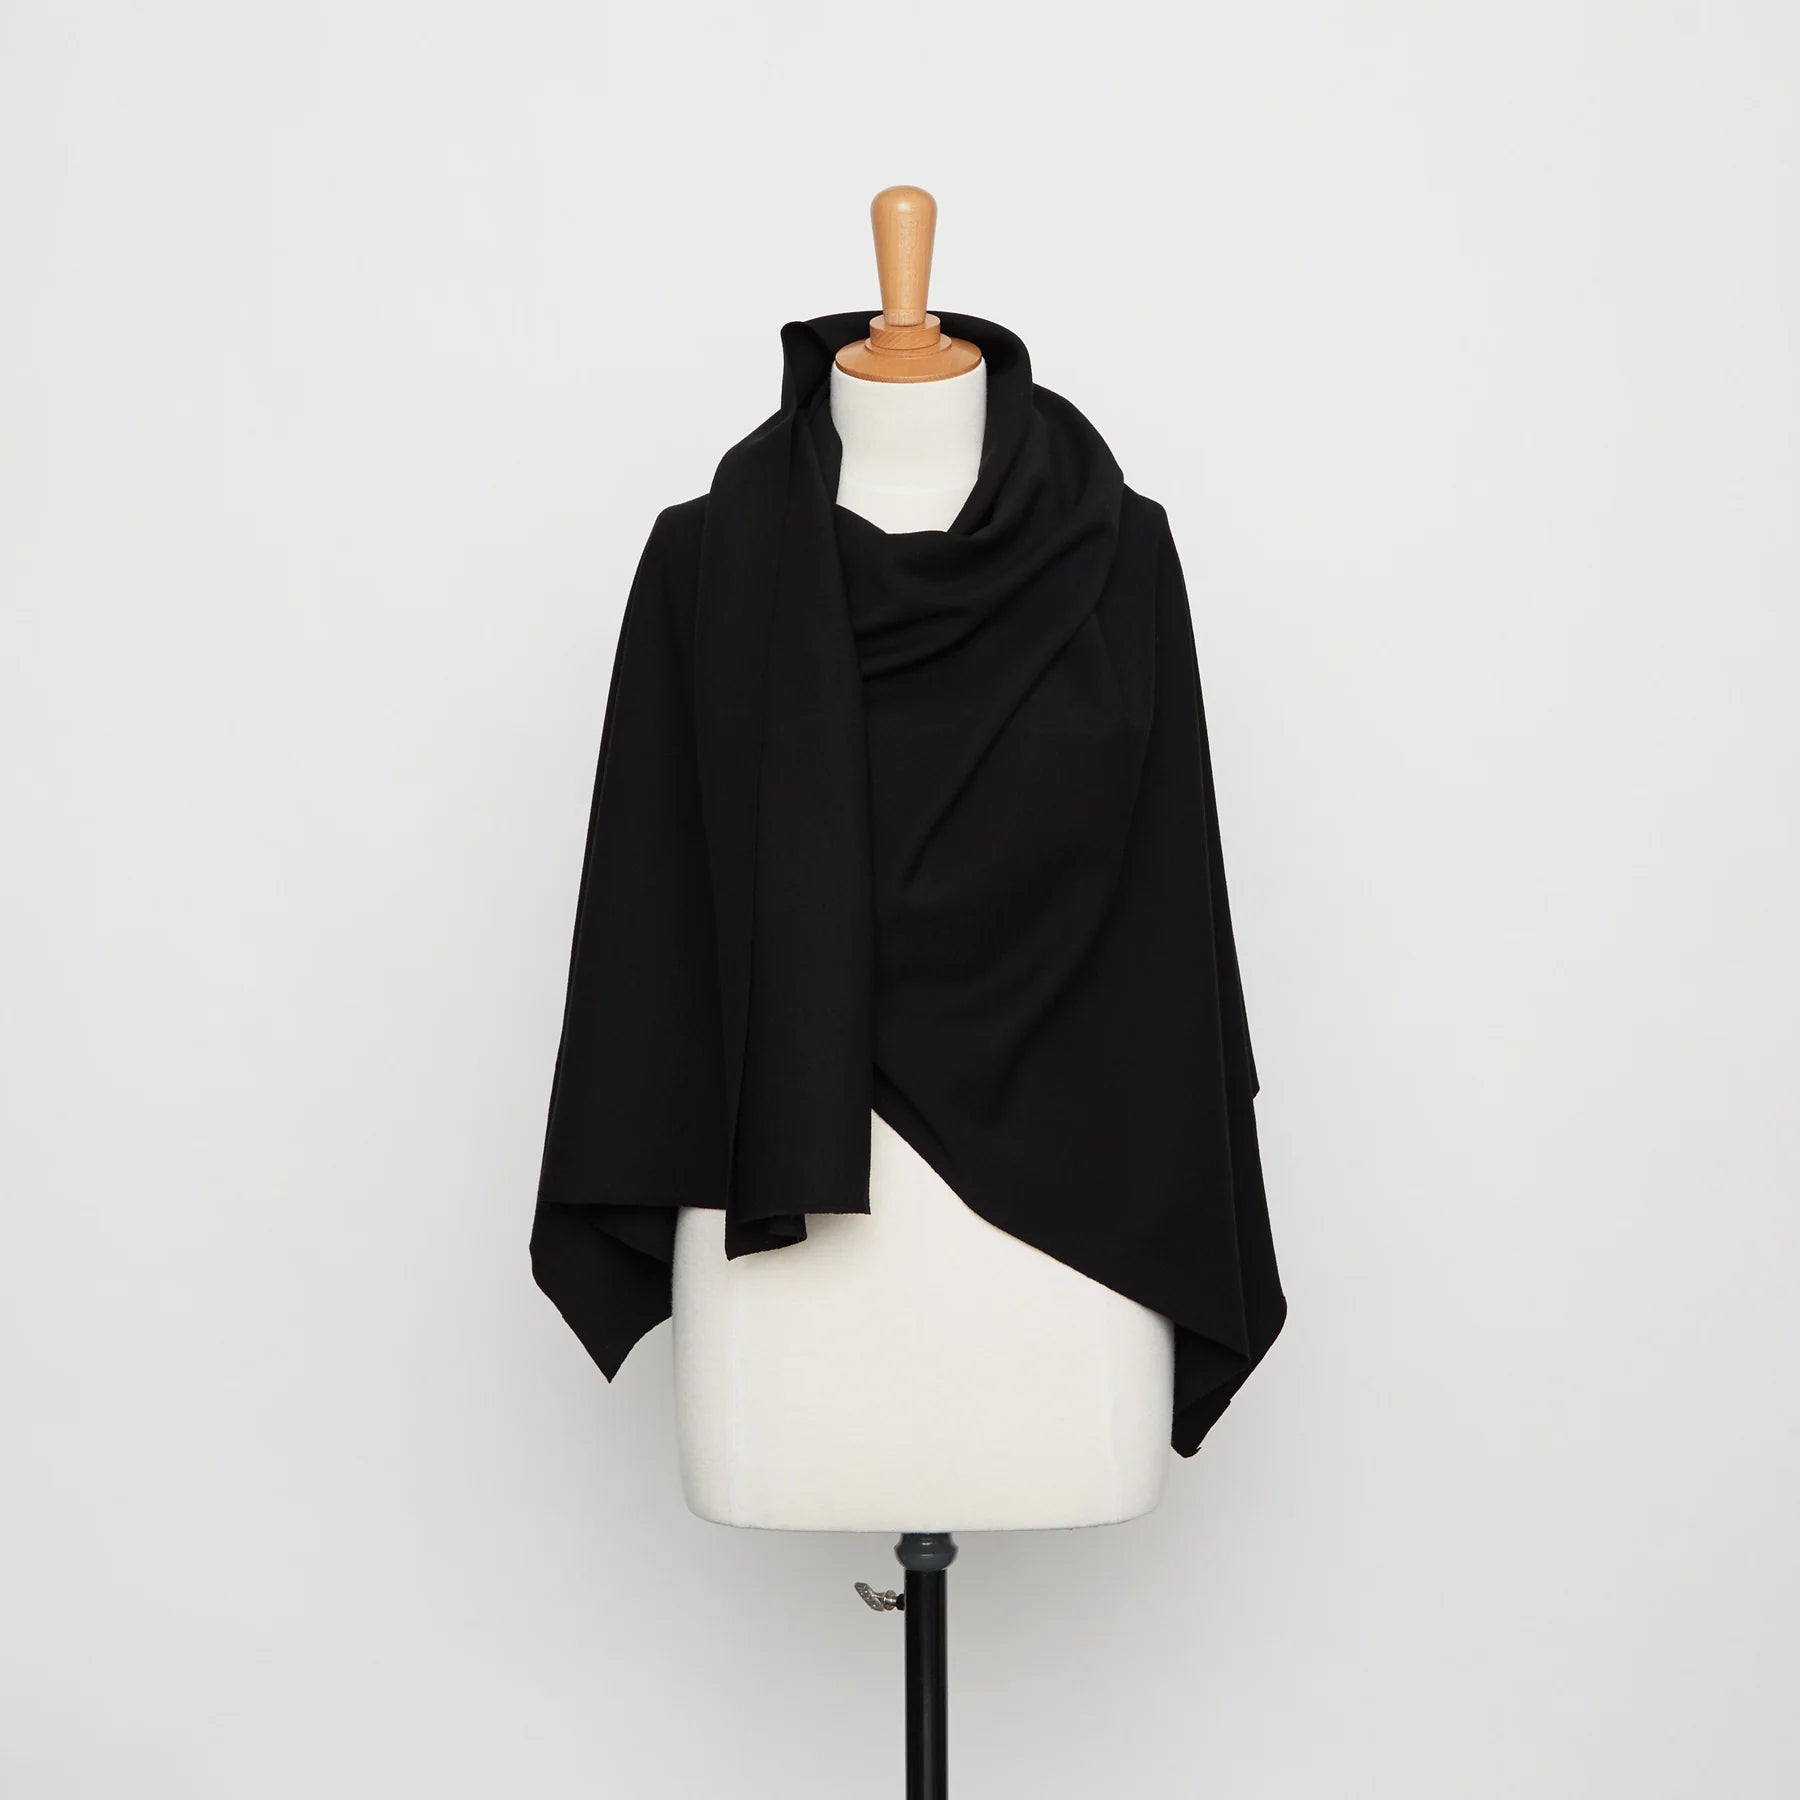 Jersey de laine noir - stocks dormants maison de luxe française disclothed paris marque de vêtements prêts-à-coudre kit couture et patrons de couture modernes